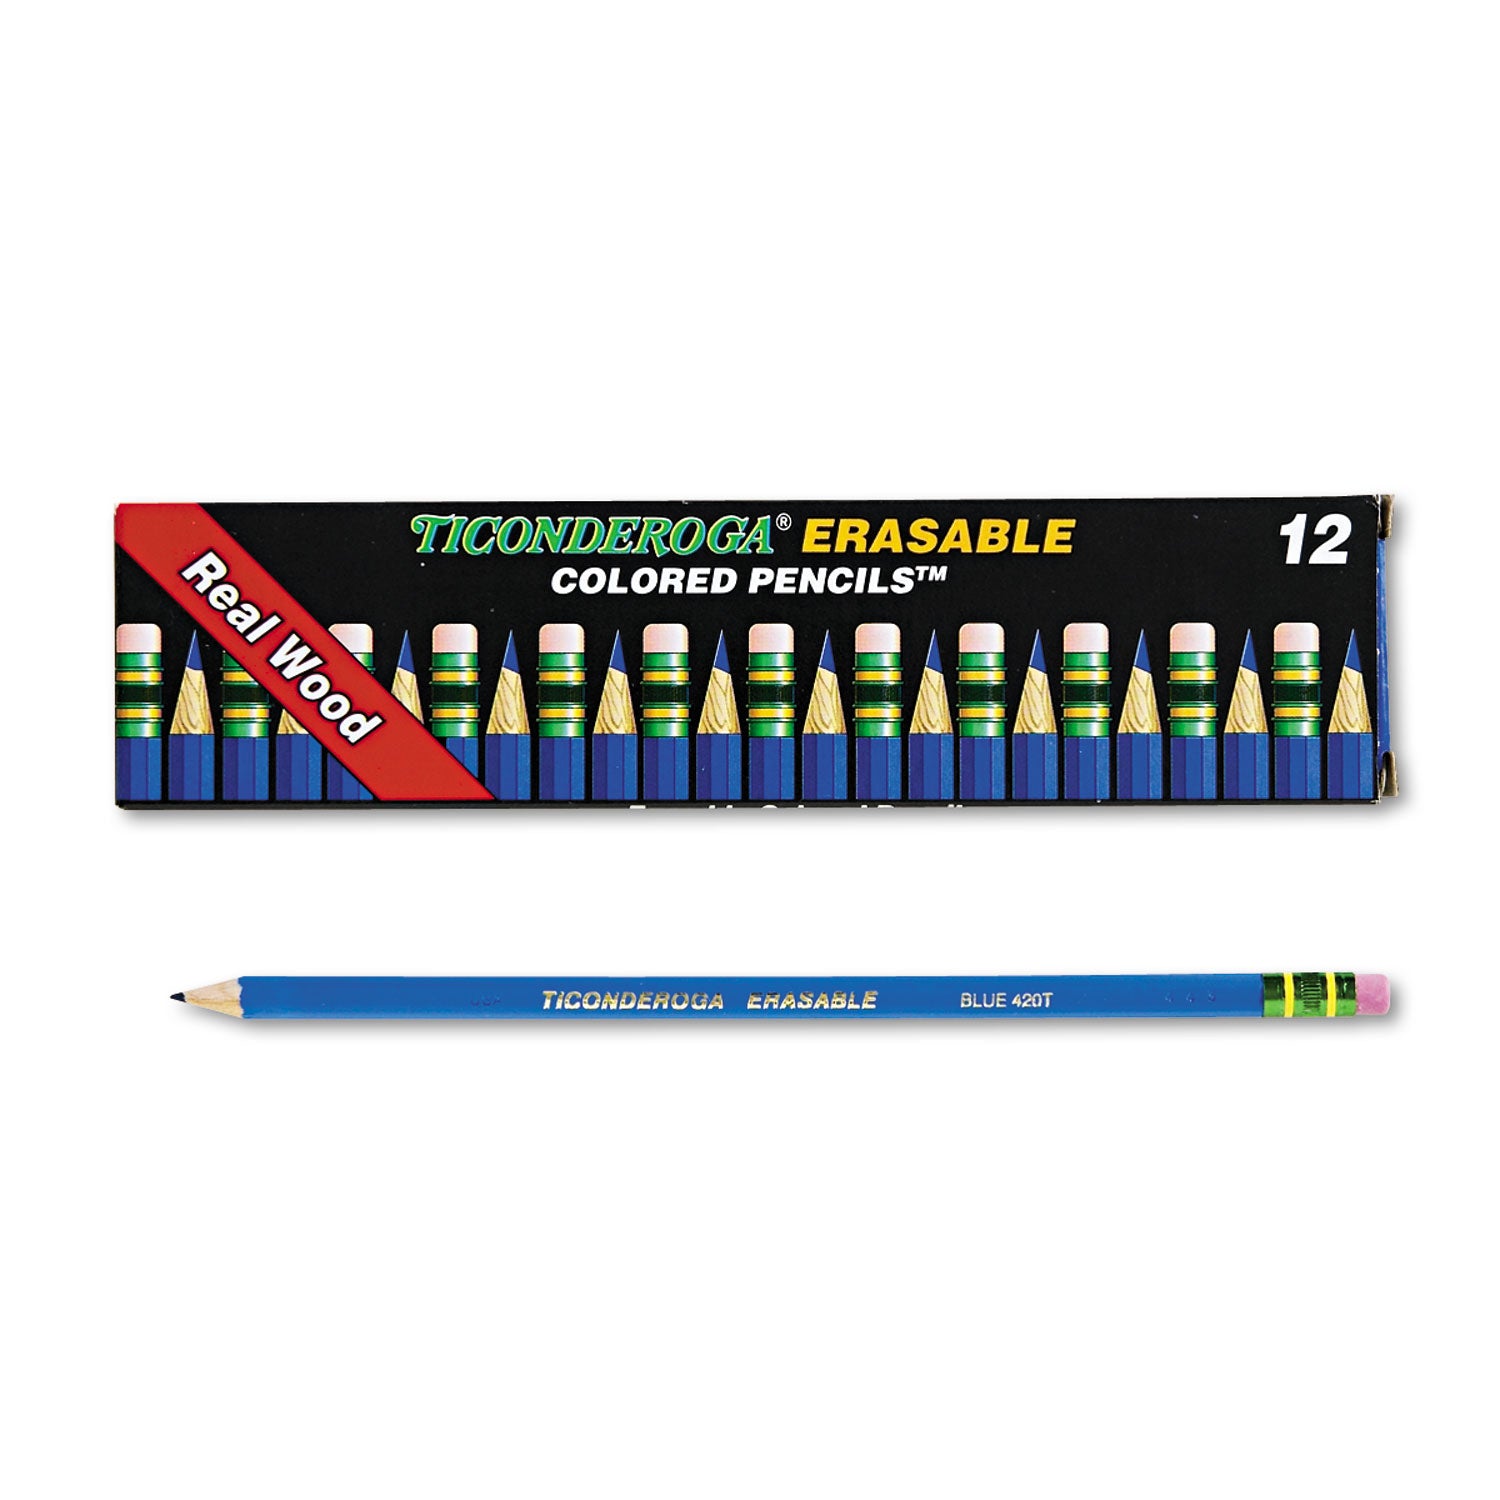 Erasable Colored Pencils, 2.6 mm, 2B, Blue Lead, Blue Barrel, Dozen - 